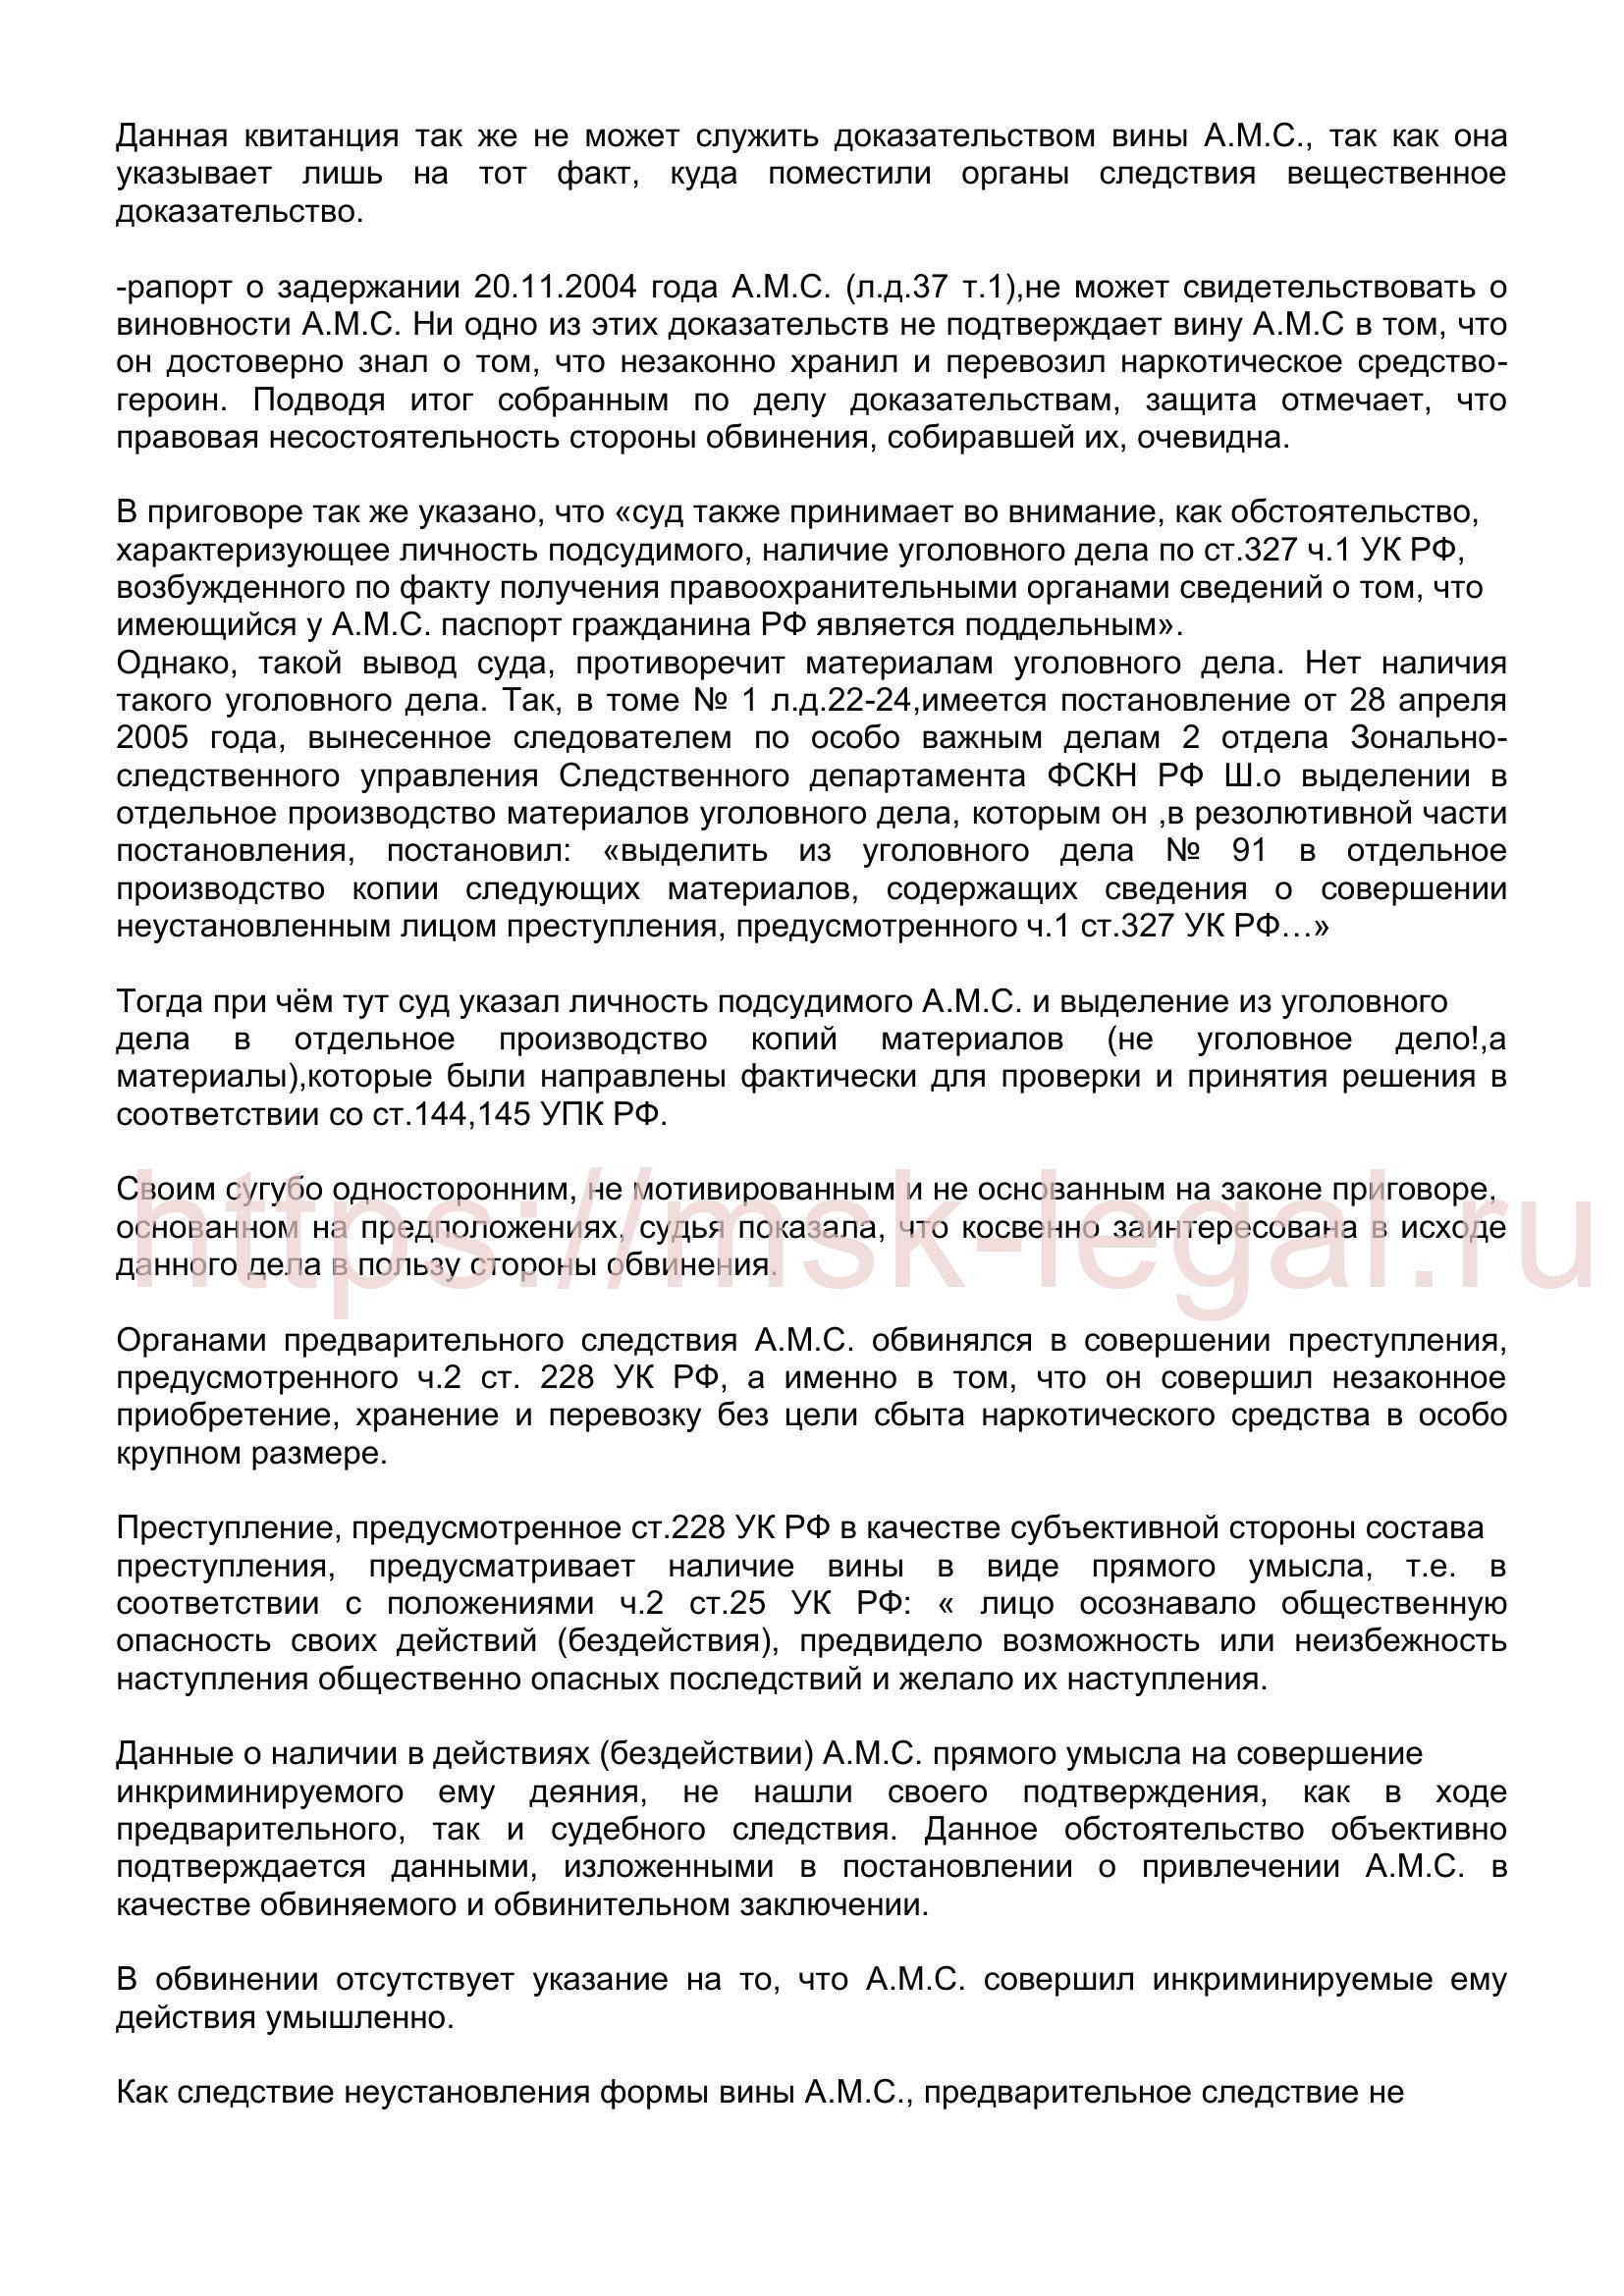 Кассационная жалоба на приговор по ст. 228 УК РФ